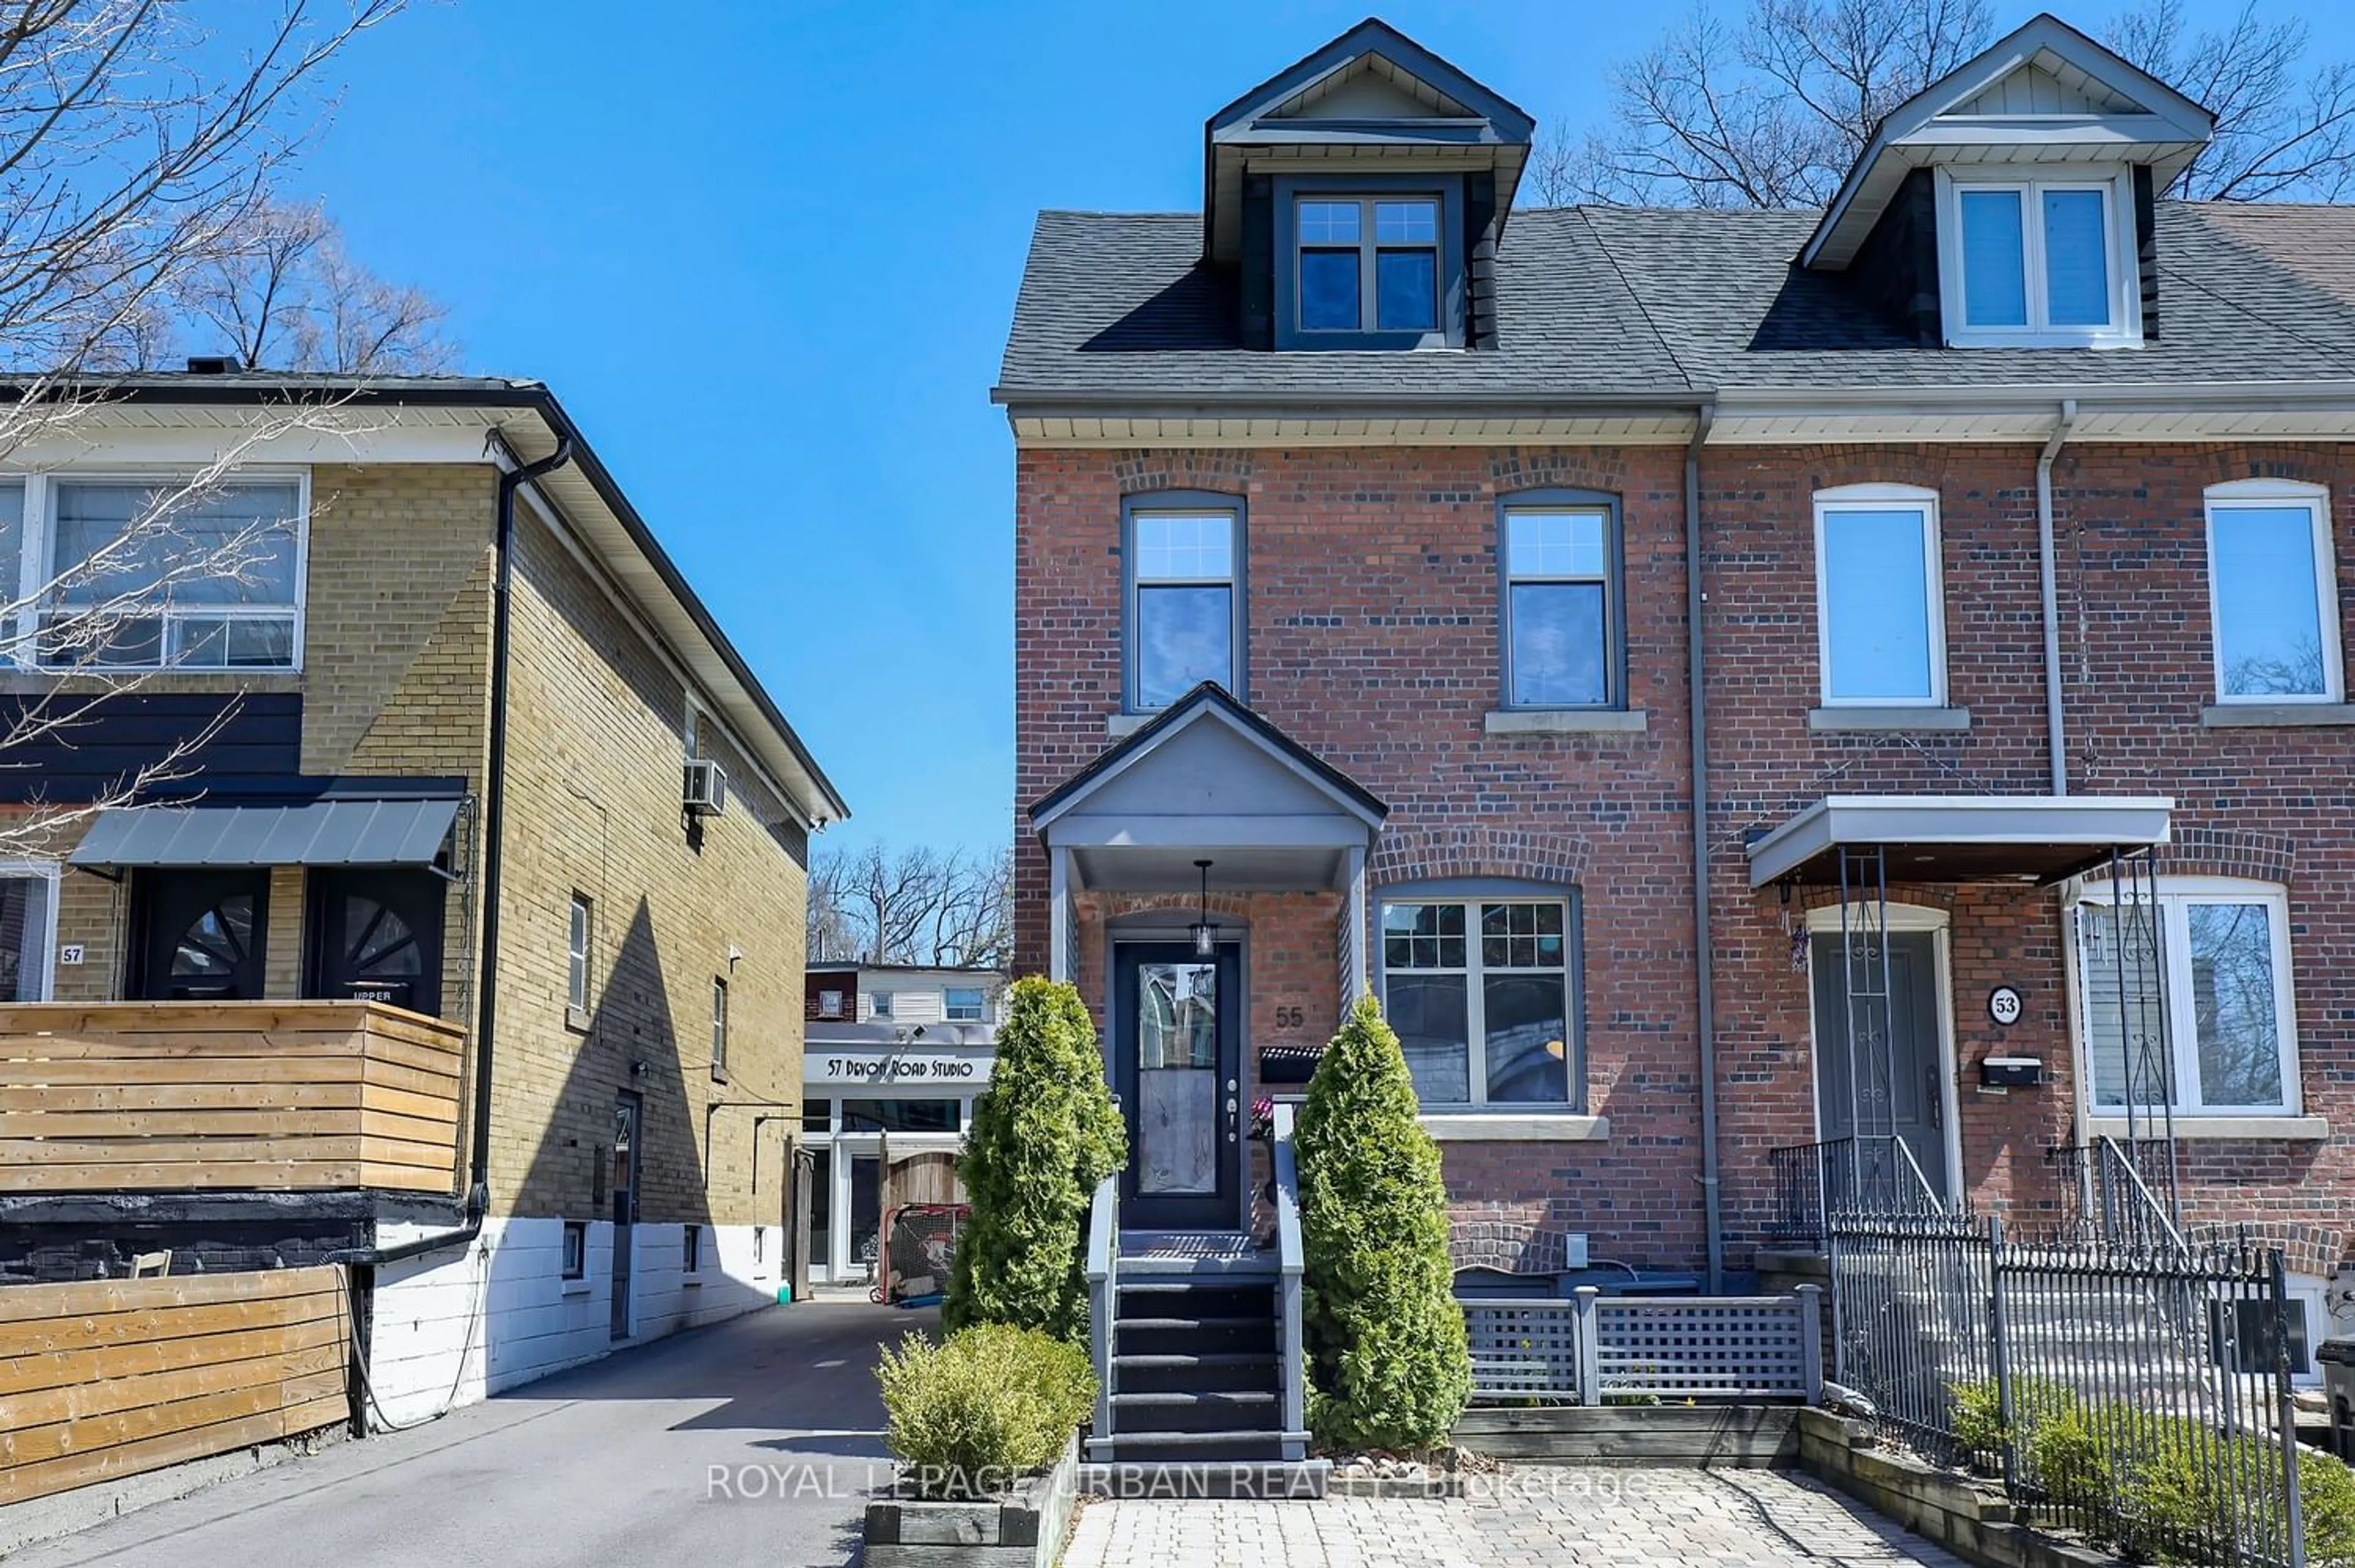 Home with brick exterior material for 55 Devon Rd, Toronto Ontario M4E 2J7